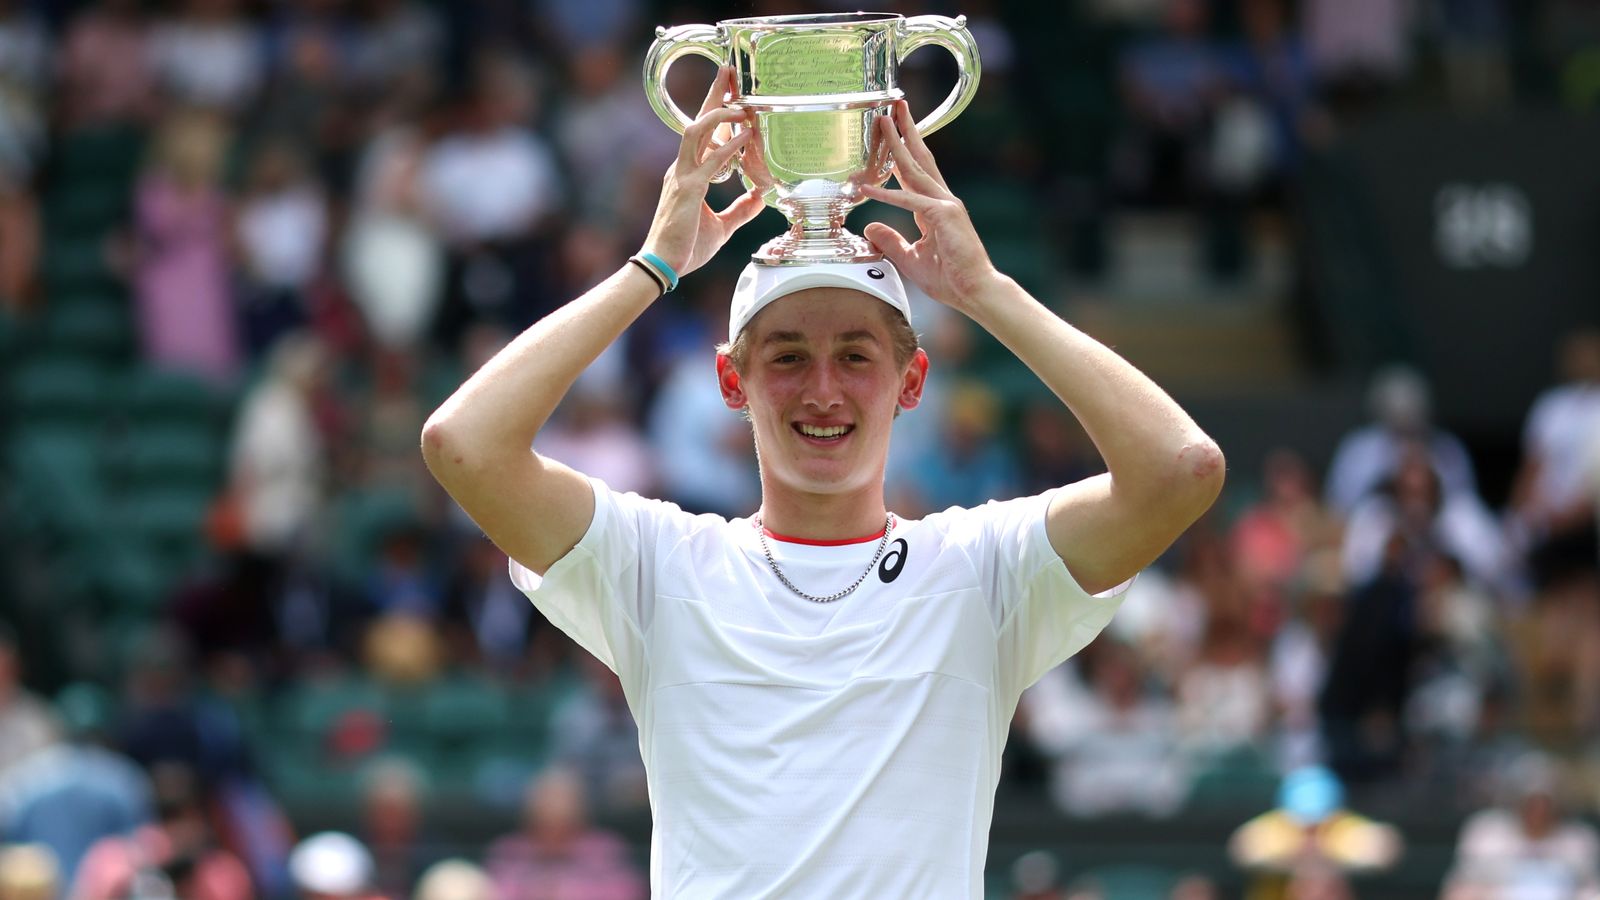 Уимблдон: британец Генри Сирл вошел в историю, выиграв титул среди мальчиков в одиночном разряде |  Новости тенниса